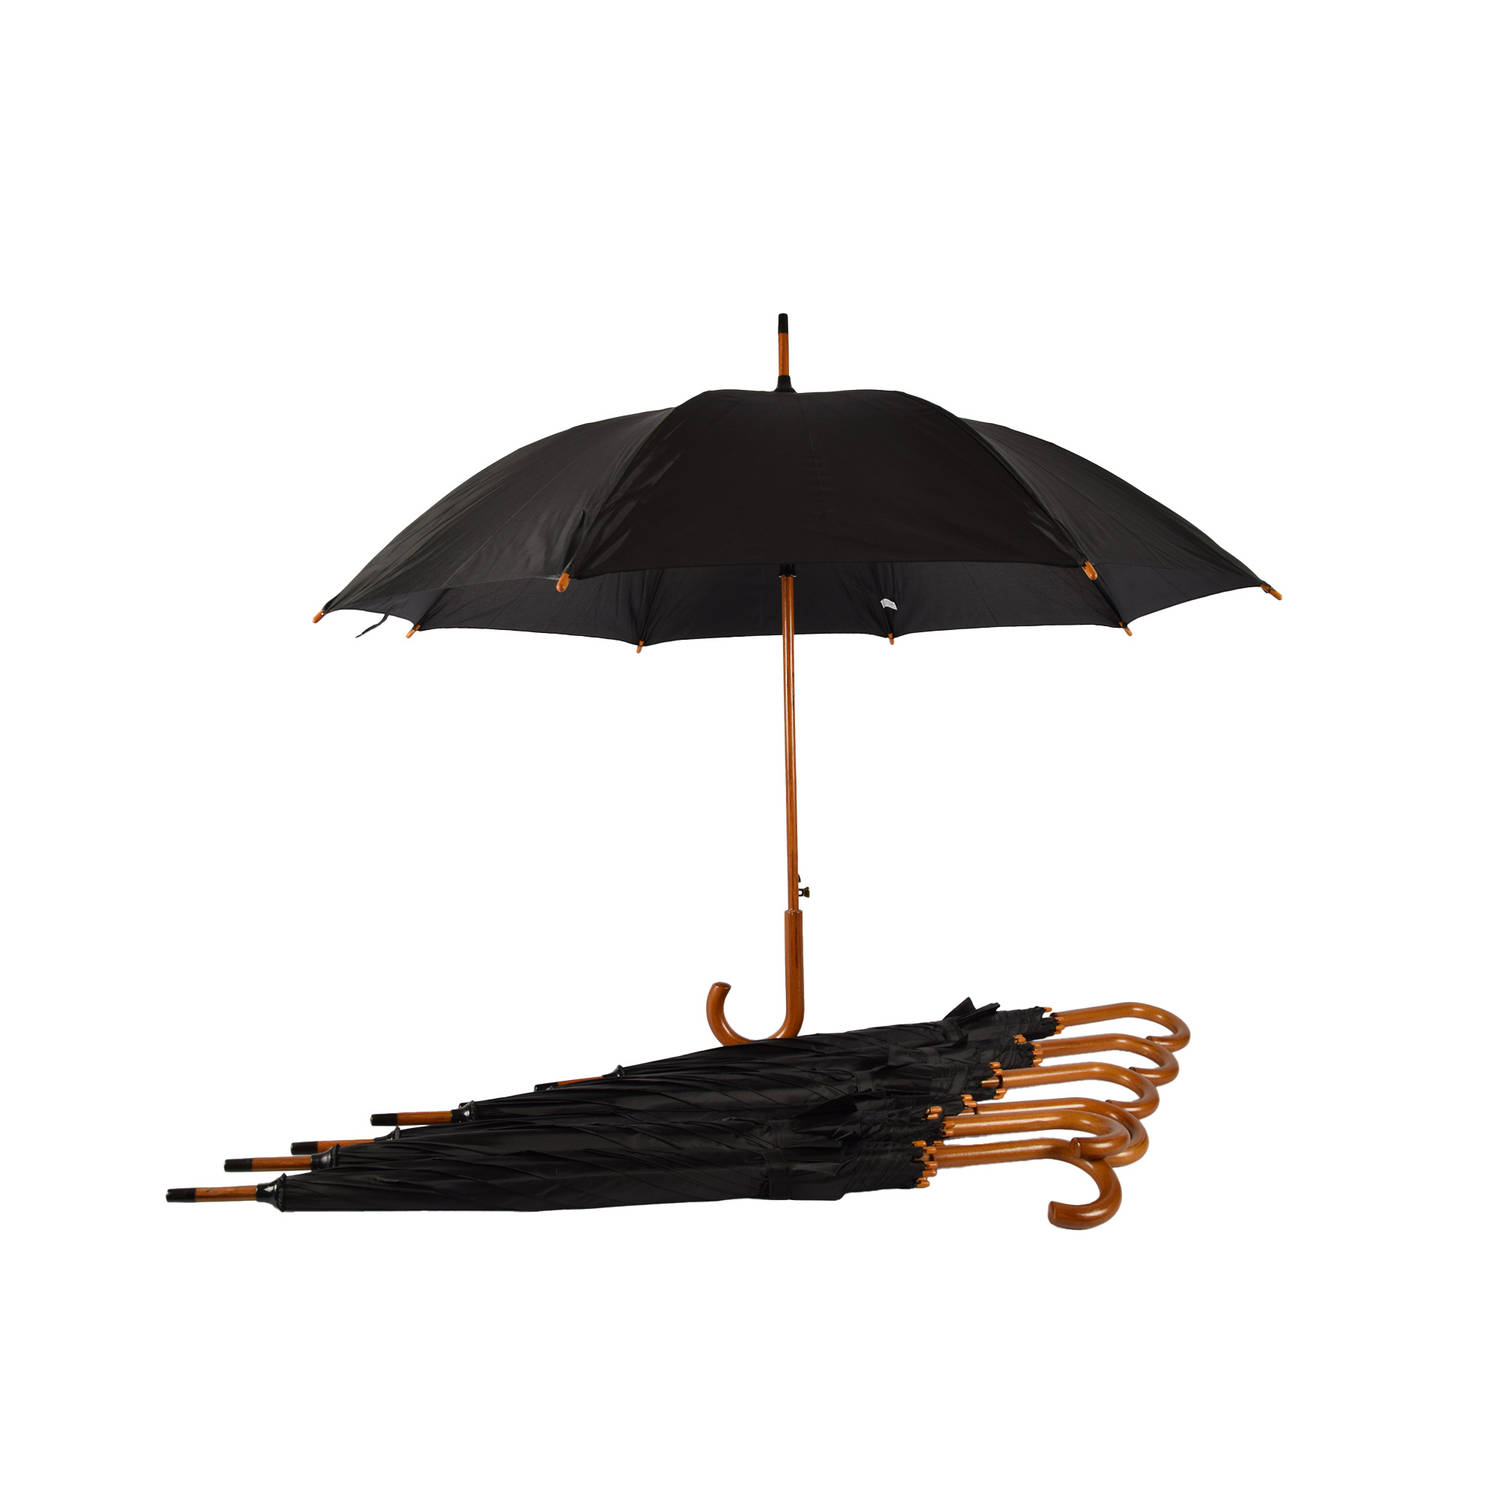 Set van 7 Zwarte Automatische Paraplu's voor Volwassenen met Houten Handvat - Aluminium Frame - Polyester Doek - 102cm Diameter - Regenkleding Must-Have!